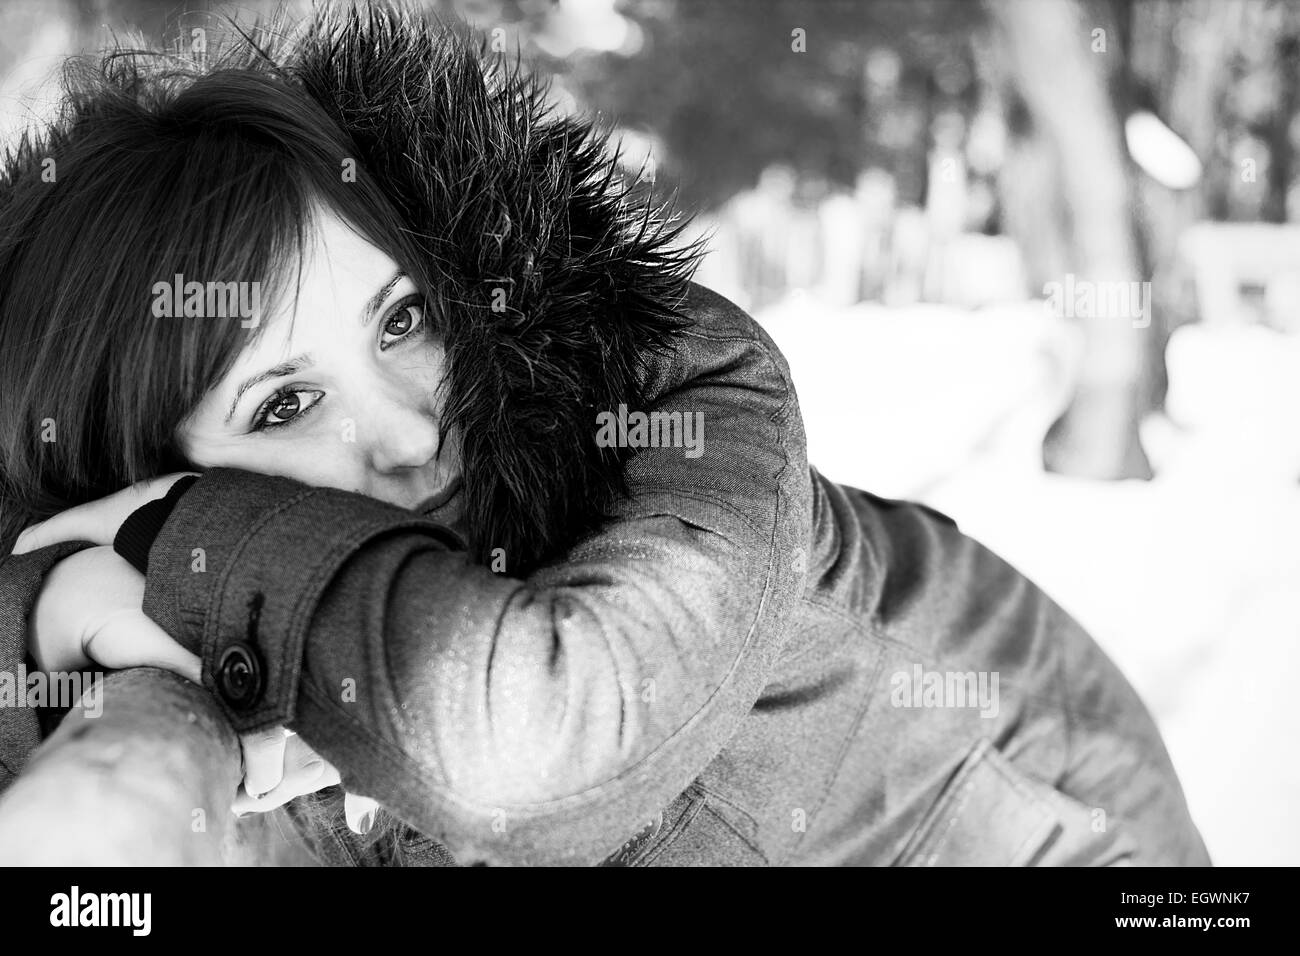 Closeup Portrait von einer hübschen Frau im Winter in Graustufen Stockfoto